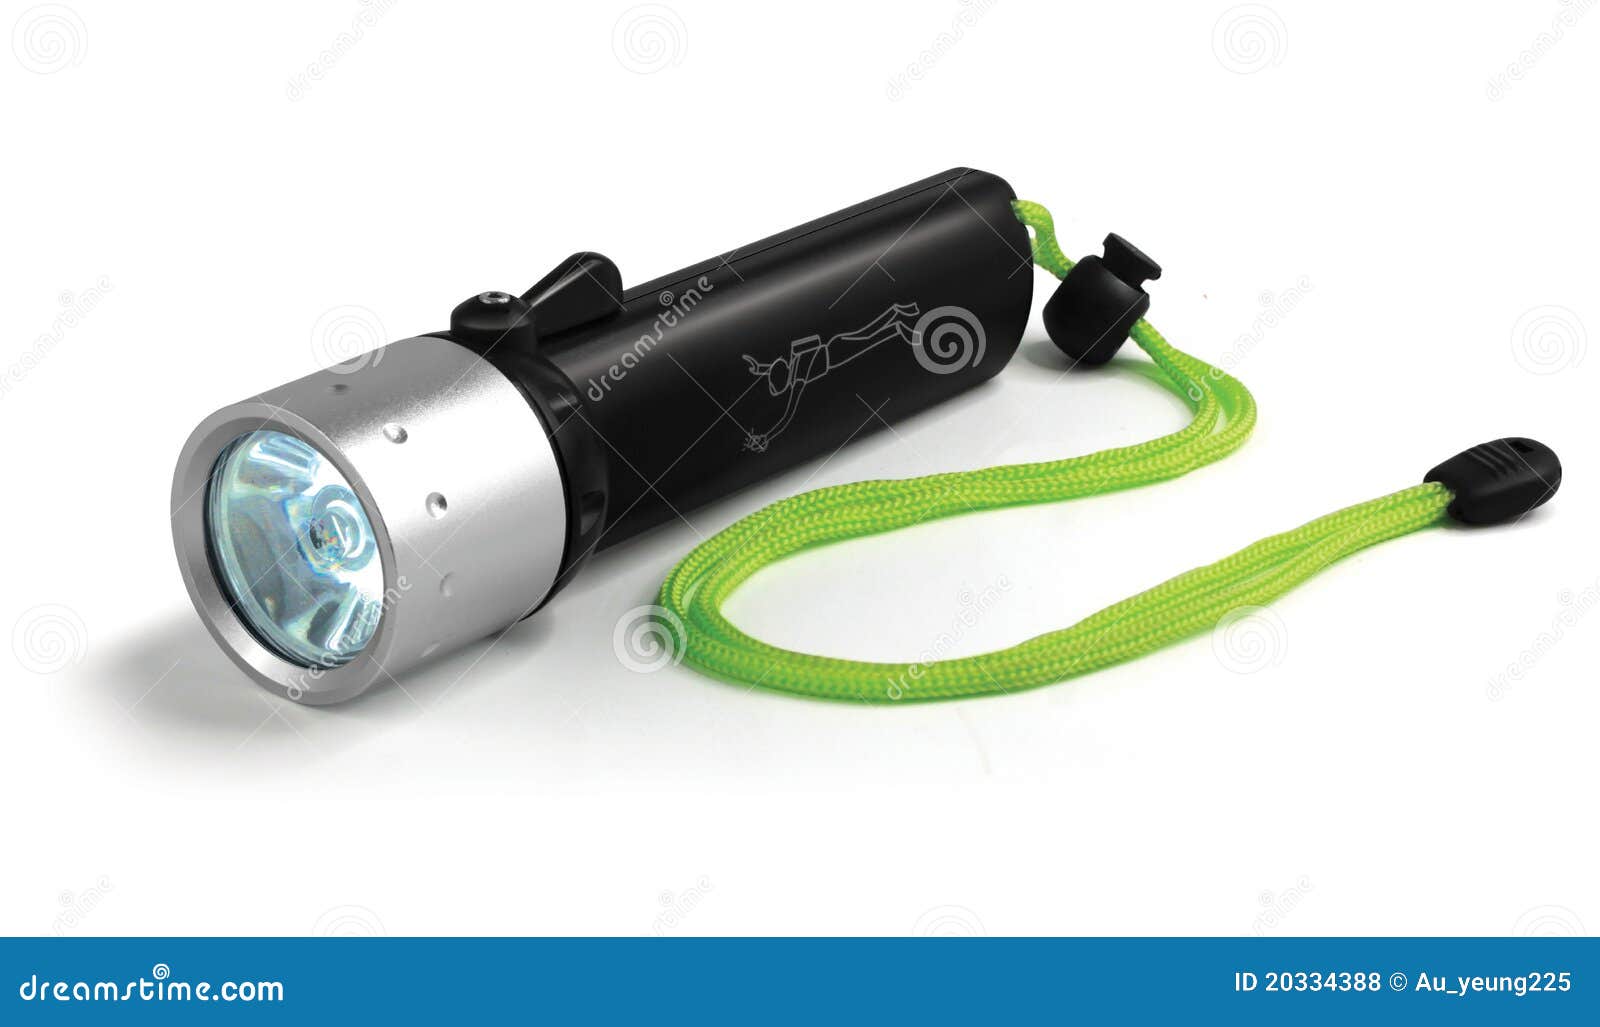 cree led dive flashlight